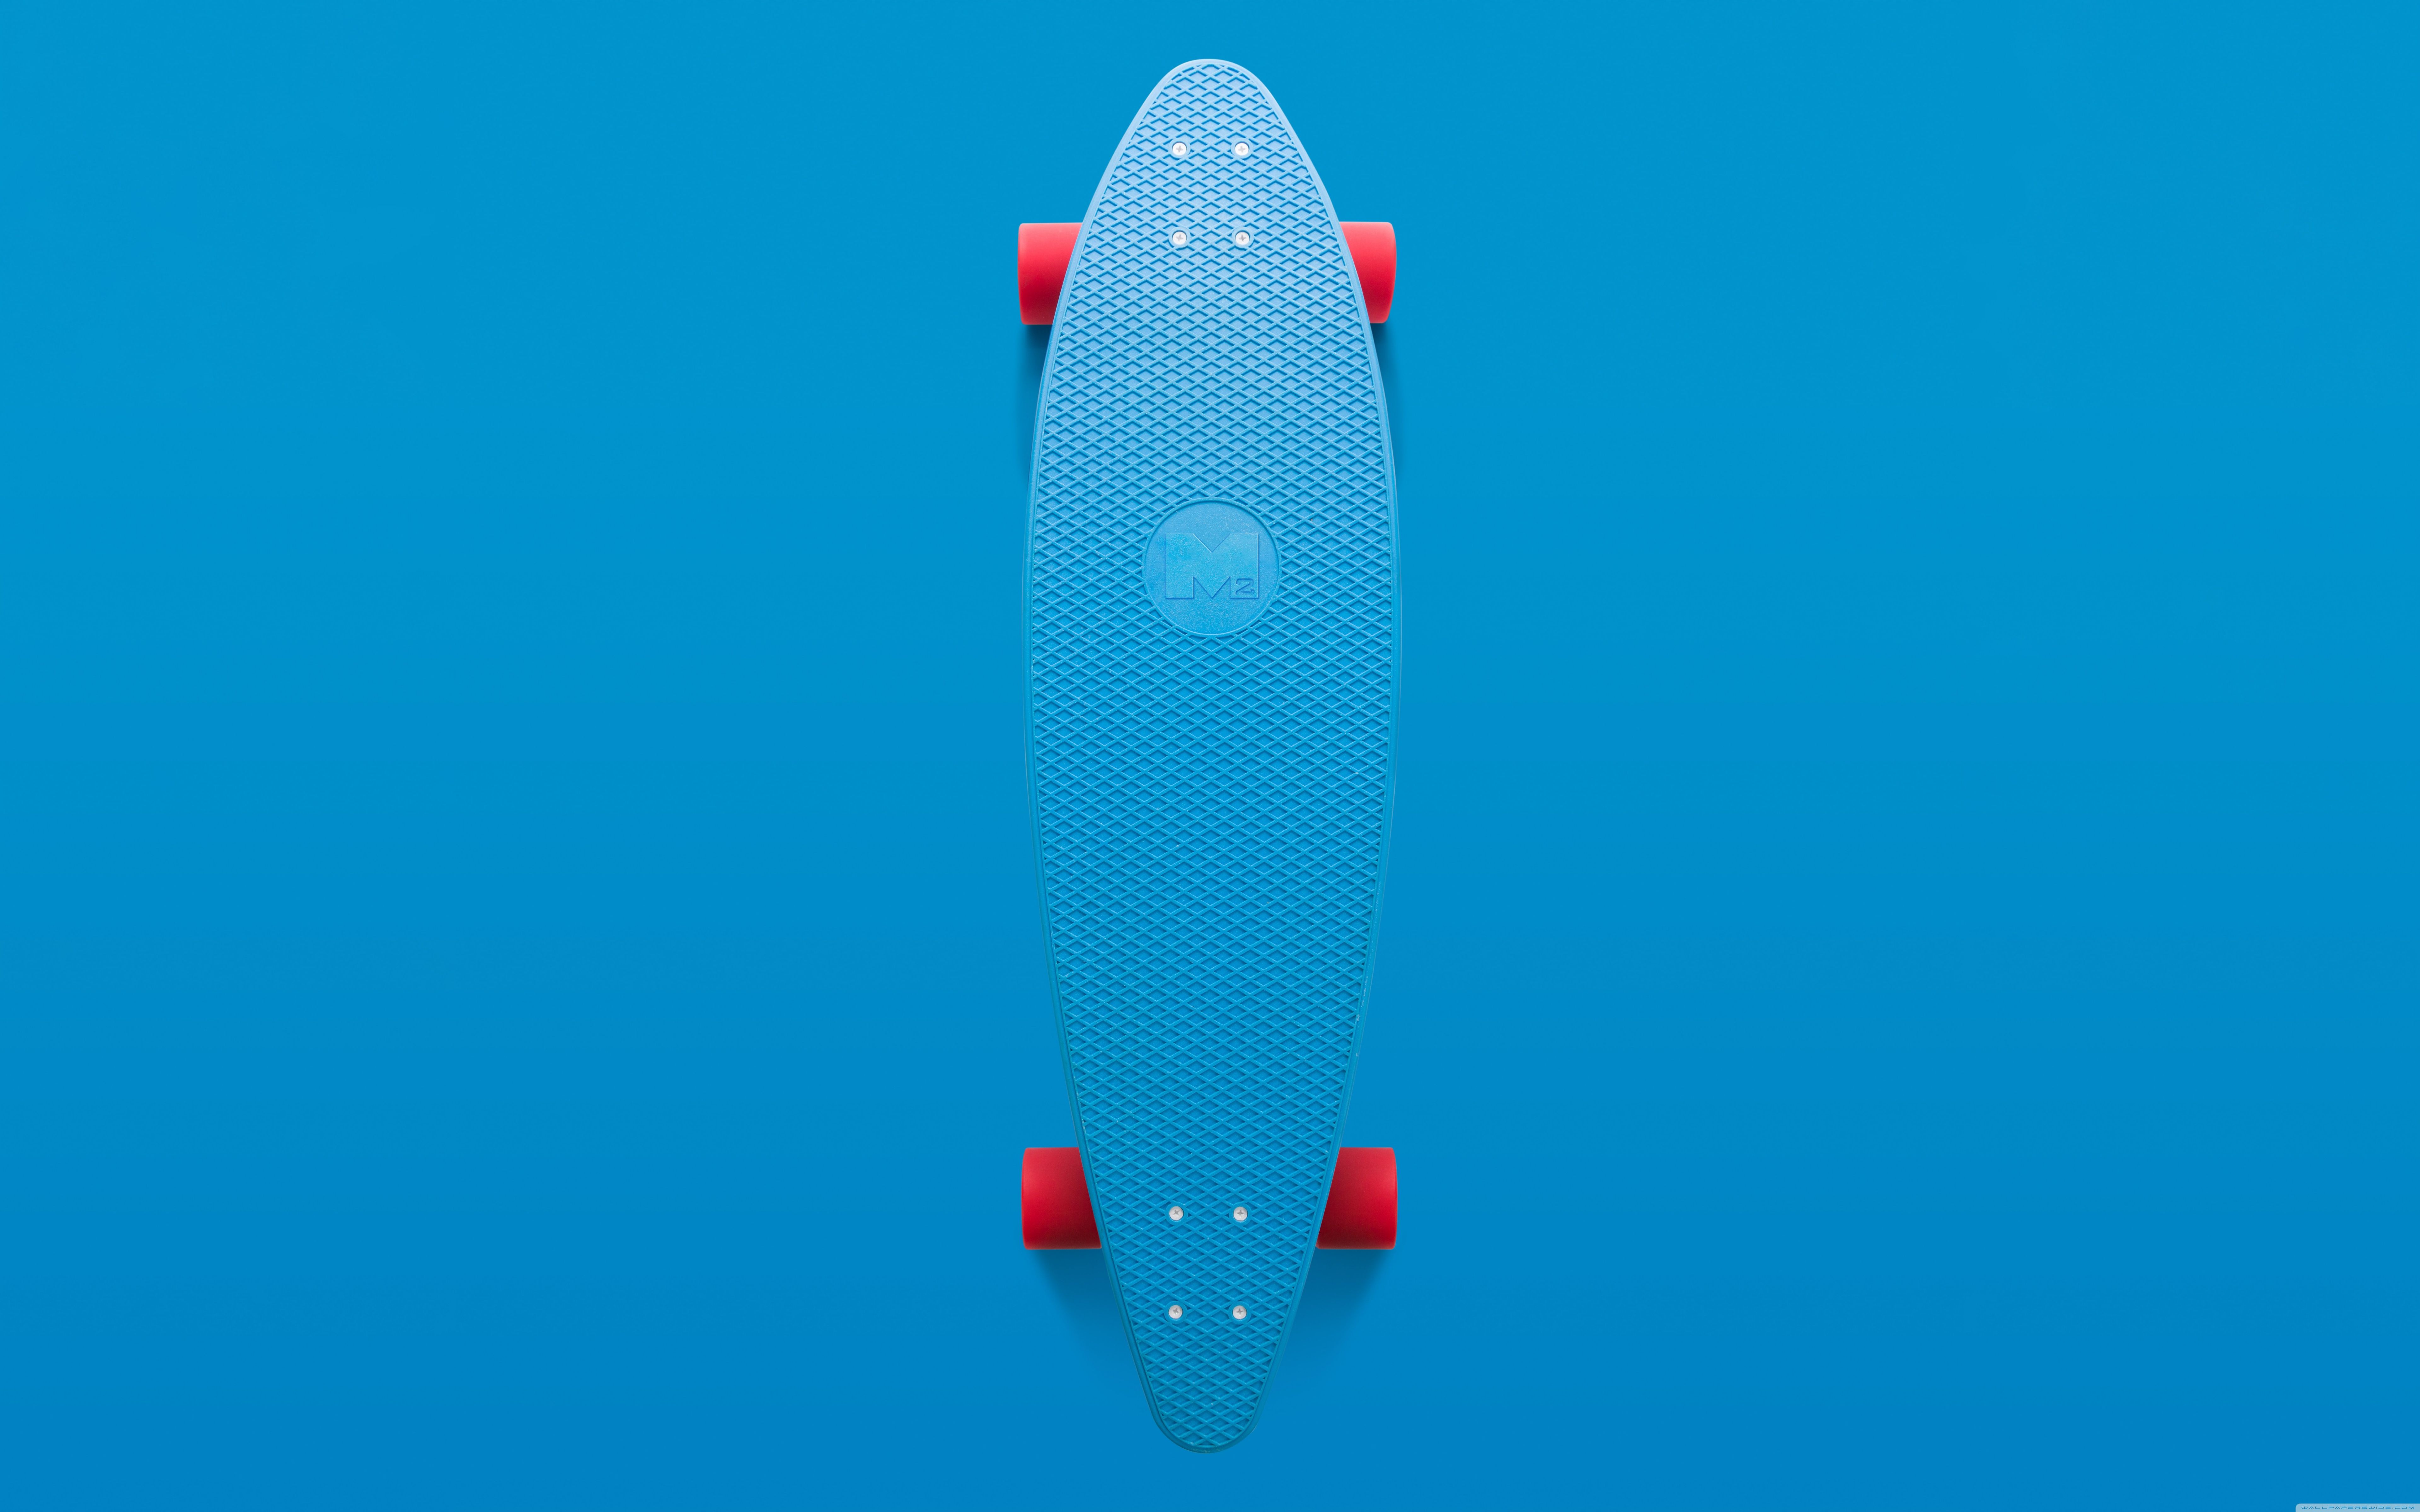 Skateboard Aesthetic Ultra HD Desktop .wallpaperwide.com